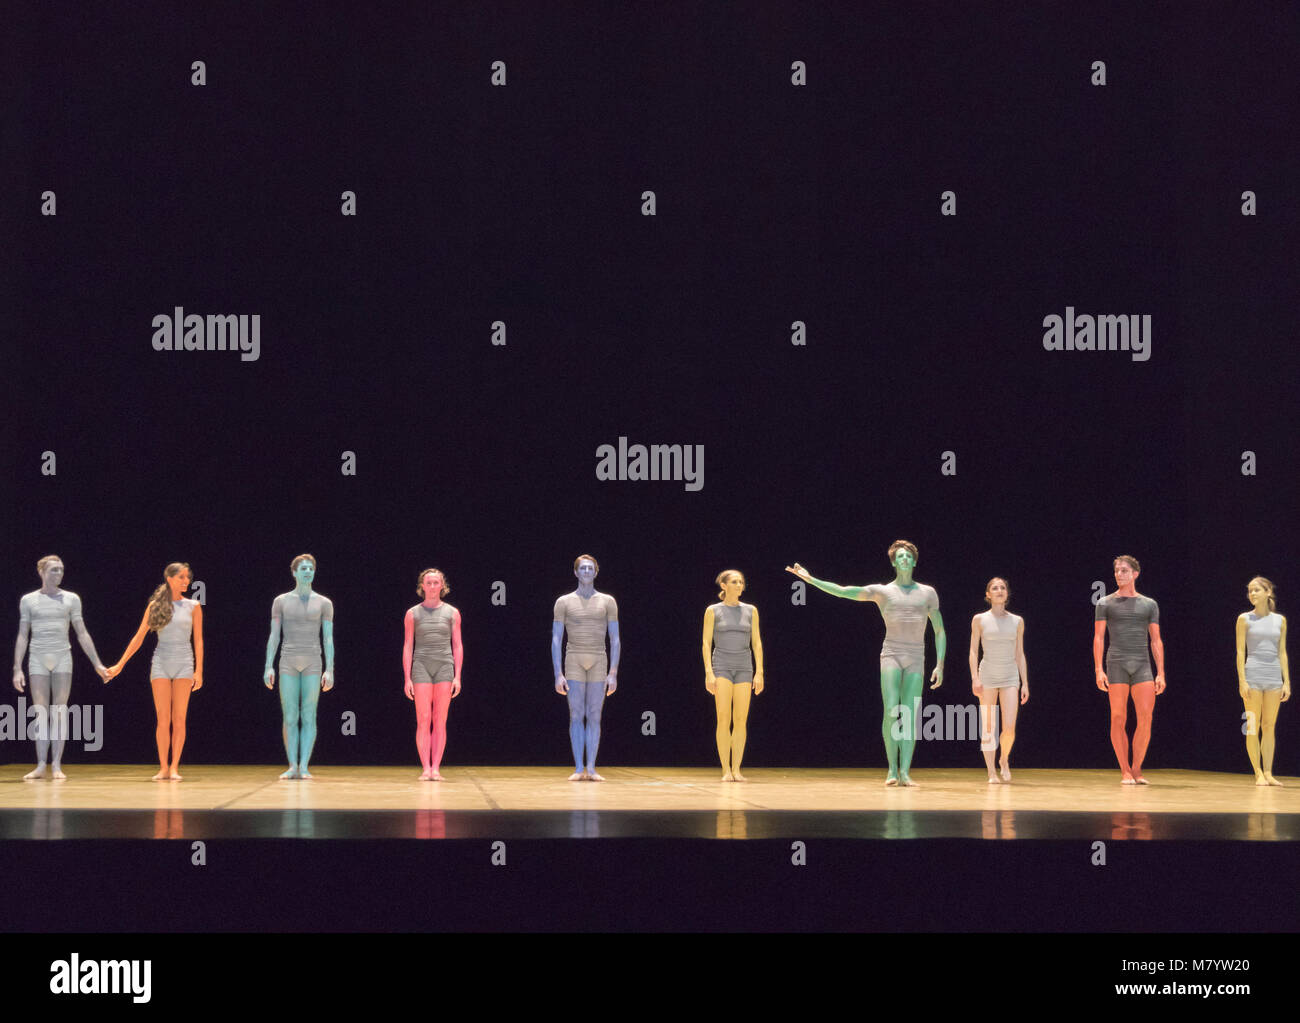 Vorhang auf für das Ballett des Grand miroir. Choreographie von Saburo Teshigawara, Musik von ESA-Pekka Salonen, Opernhaus Garnier, Paris, Frankreich Stockfoto